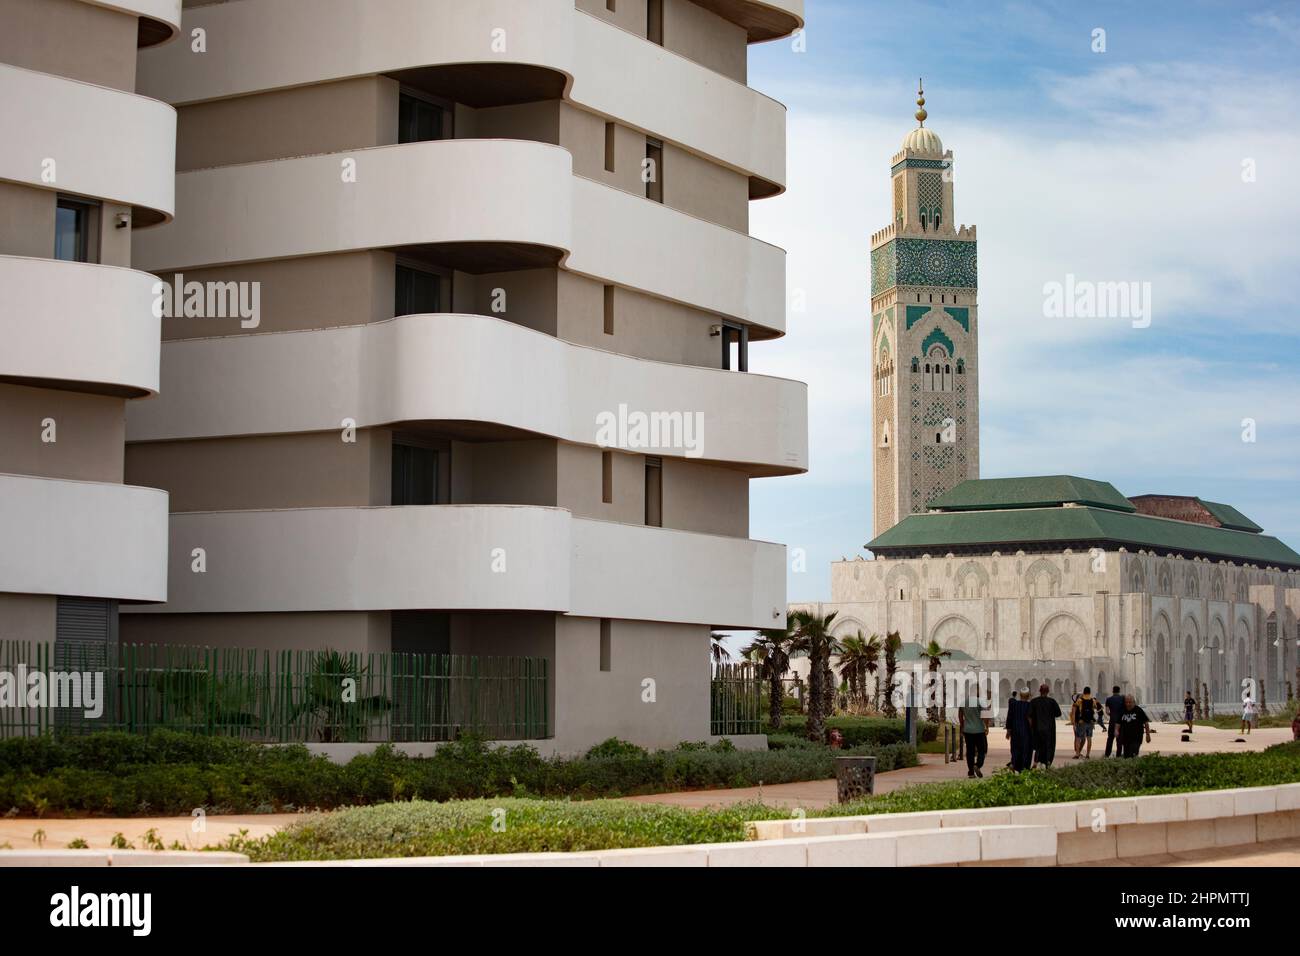 La Moschea di Hassan II sorge accanto a edifici di appartamenti contemporanei sul lungomare di Casablanca, Marocco. Foto Stock